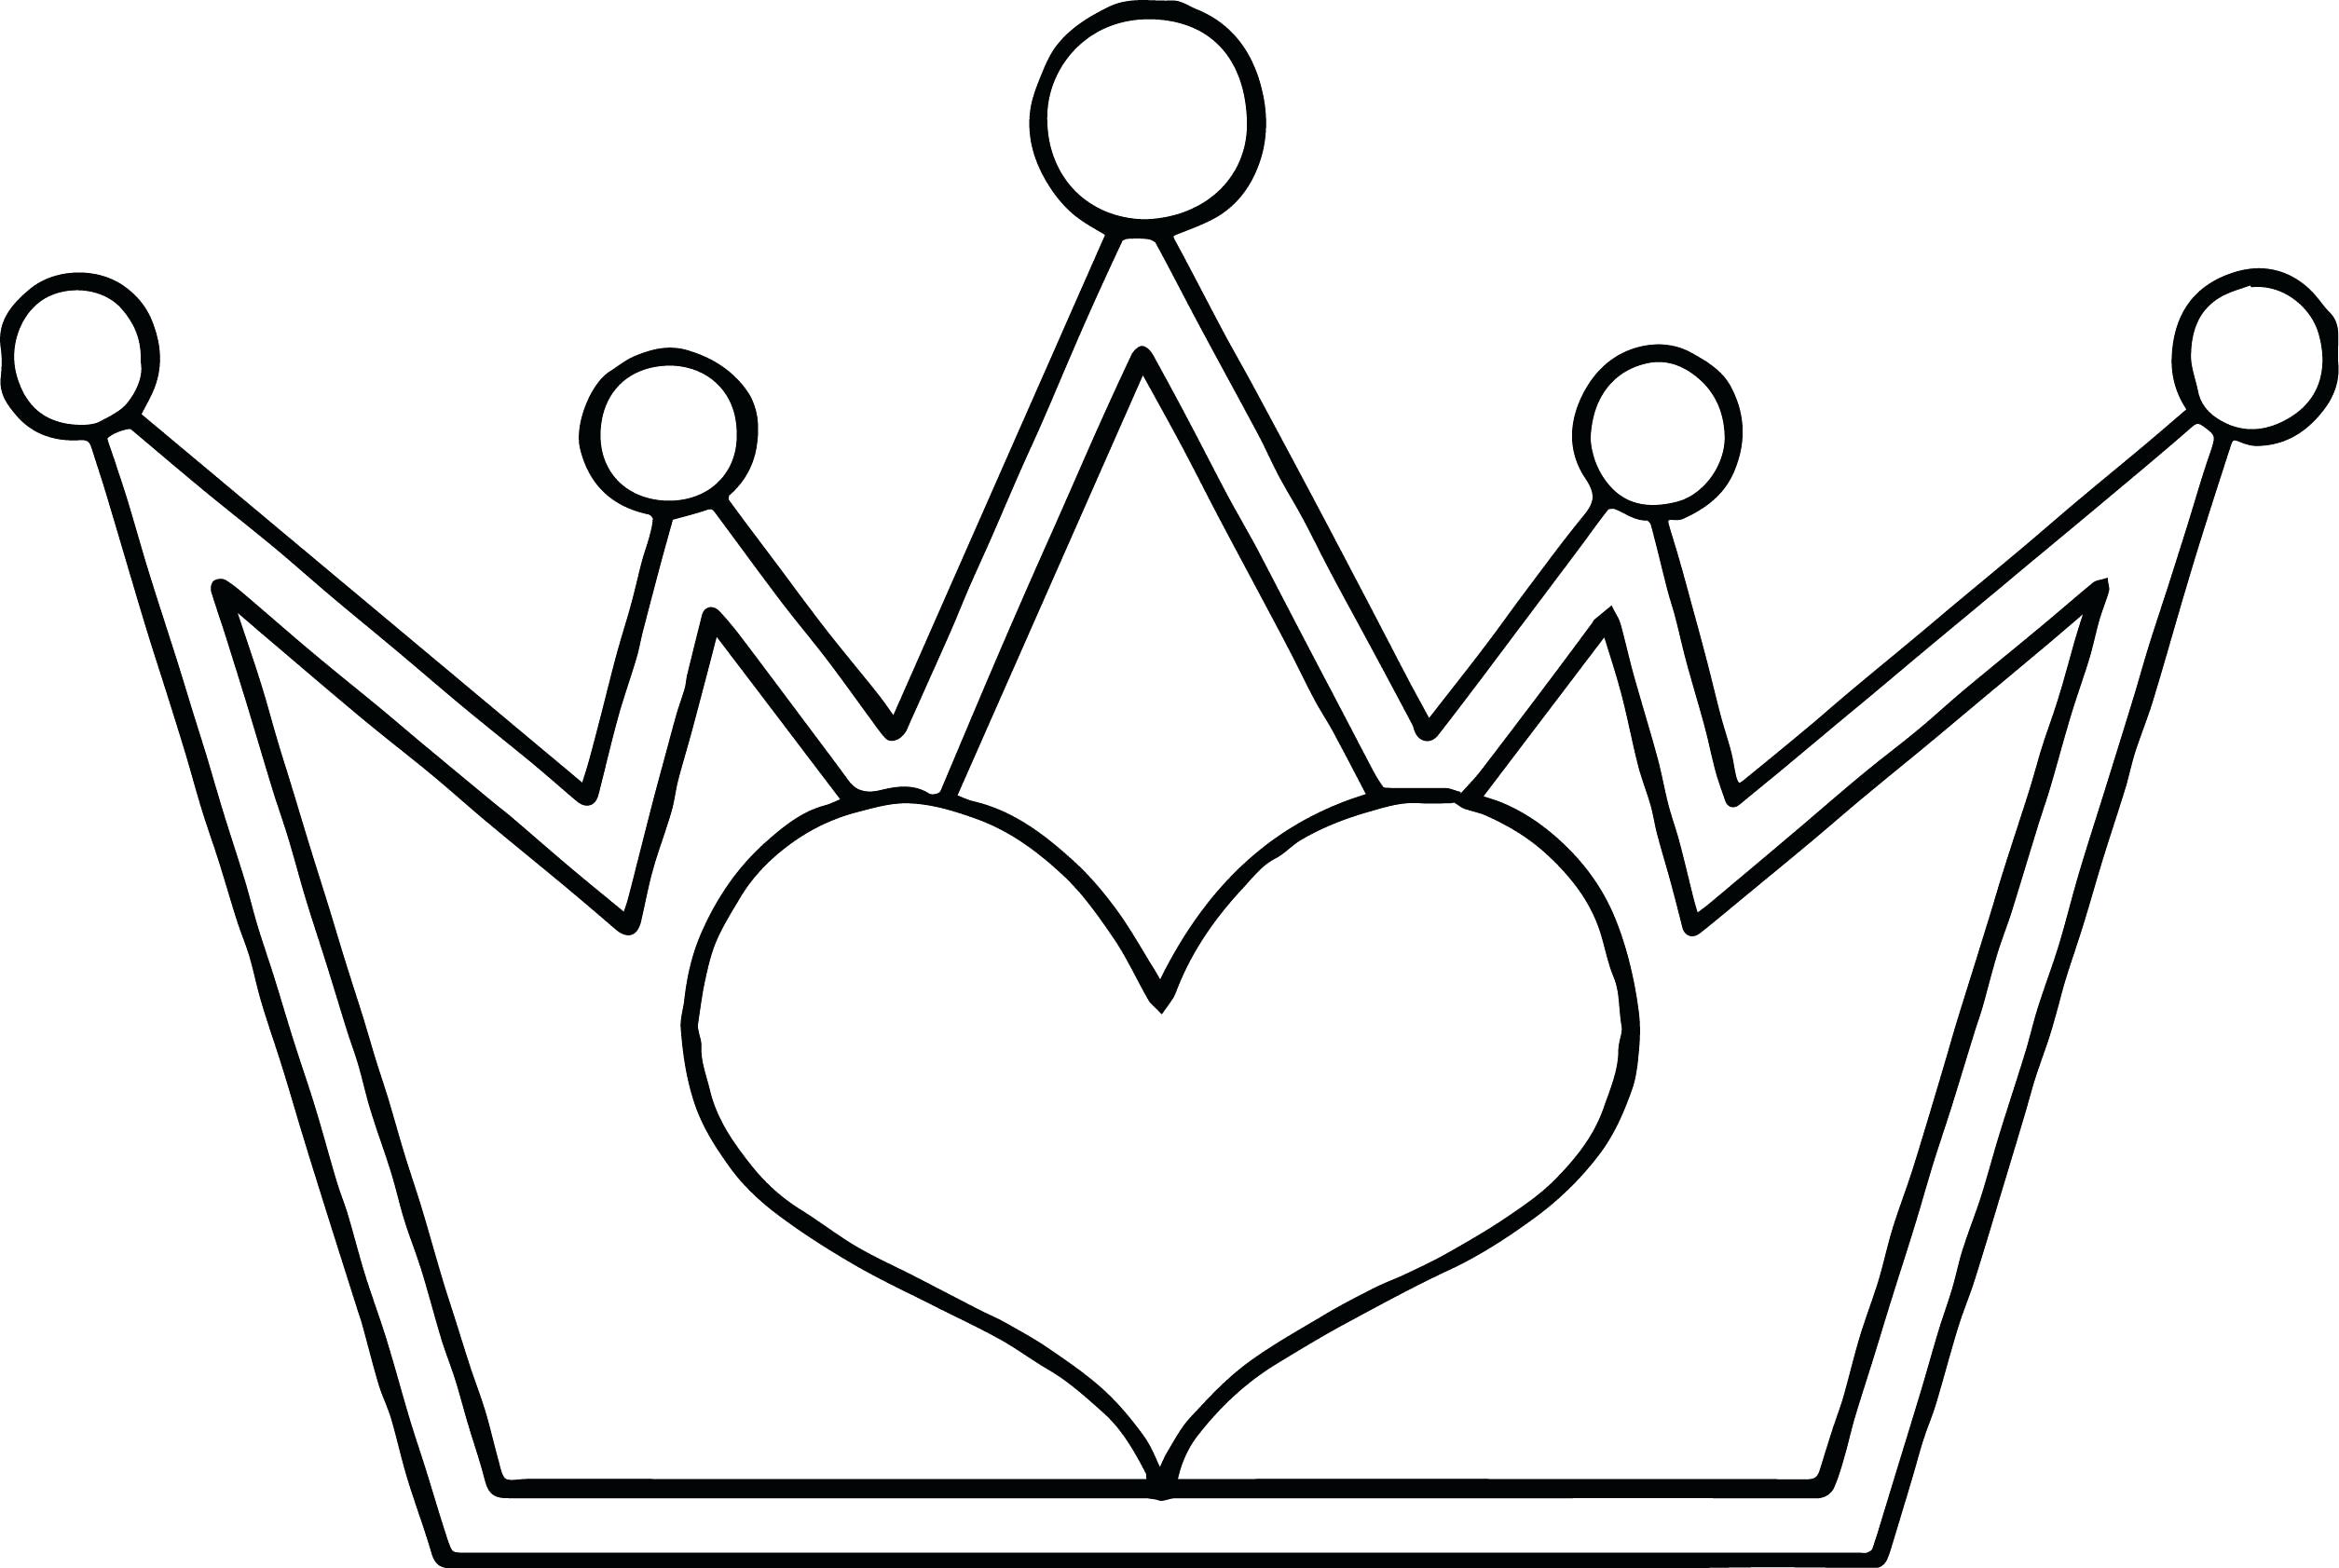 Kleurplaat Kroon Koning King And Queen Crown Drawing At Getdrawings ...